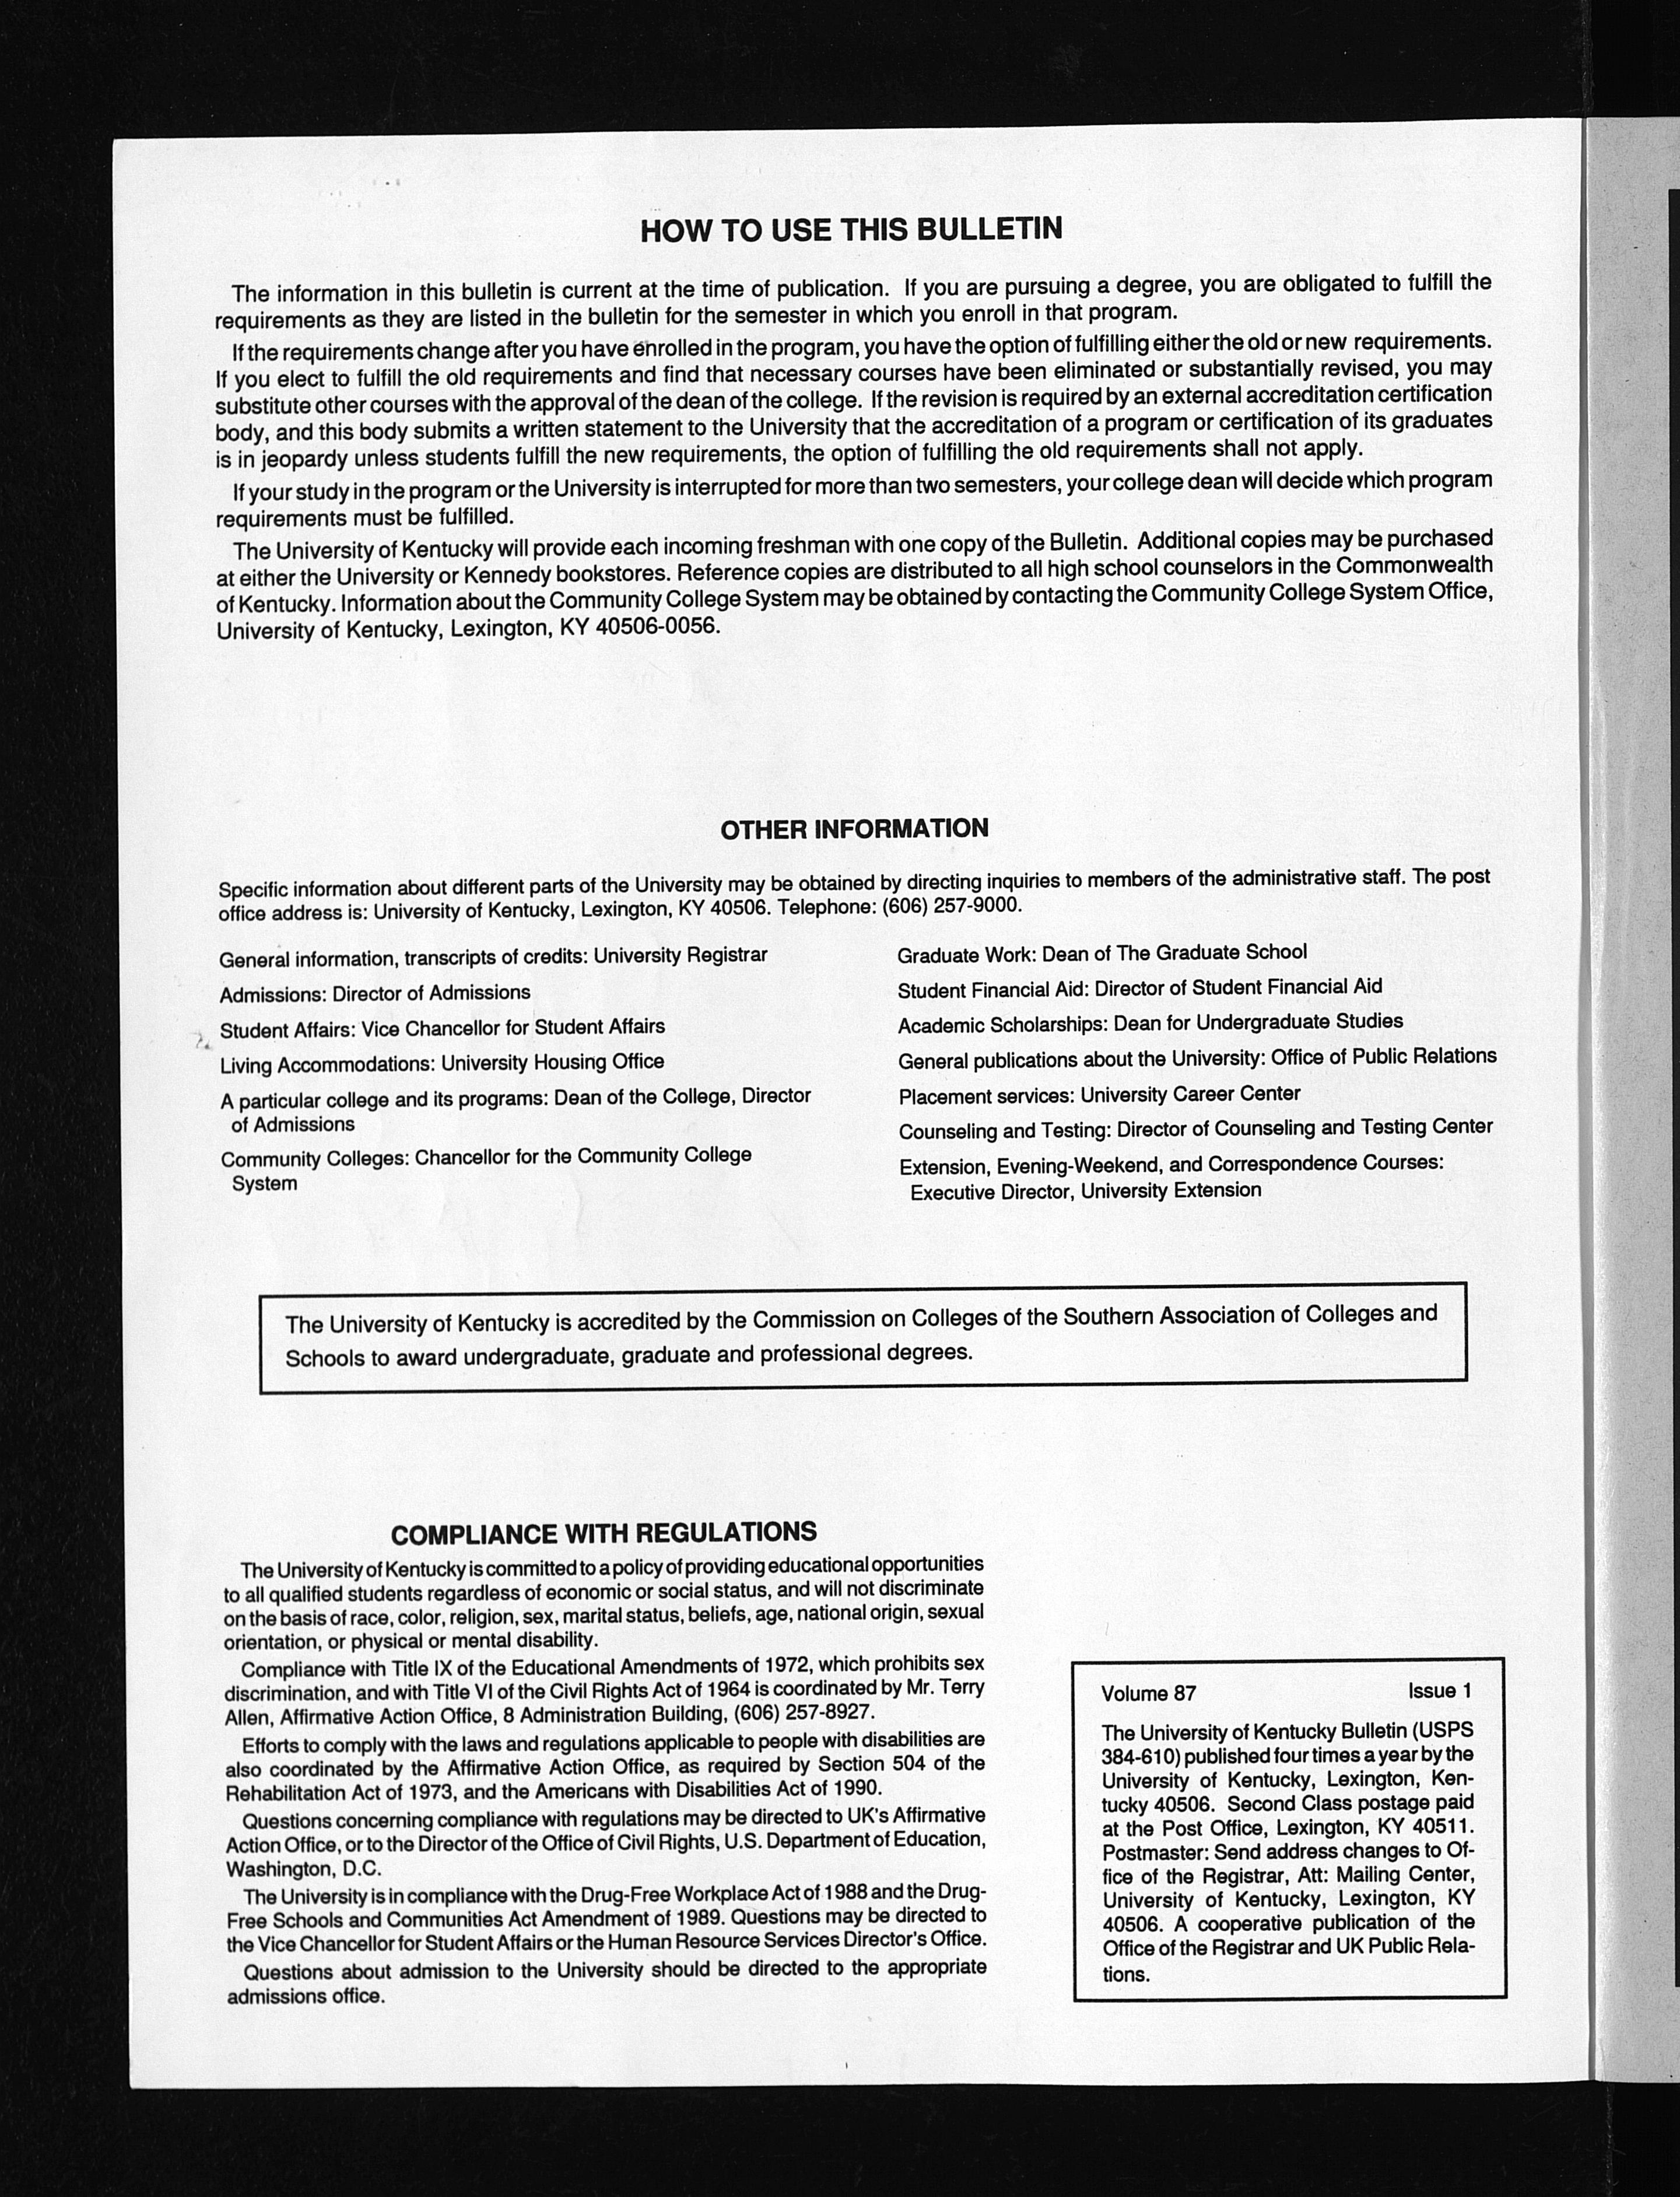 University Of Kentucky Bulletin Volume 87 Issue 1 1995 1996